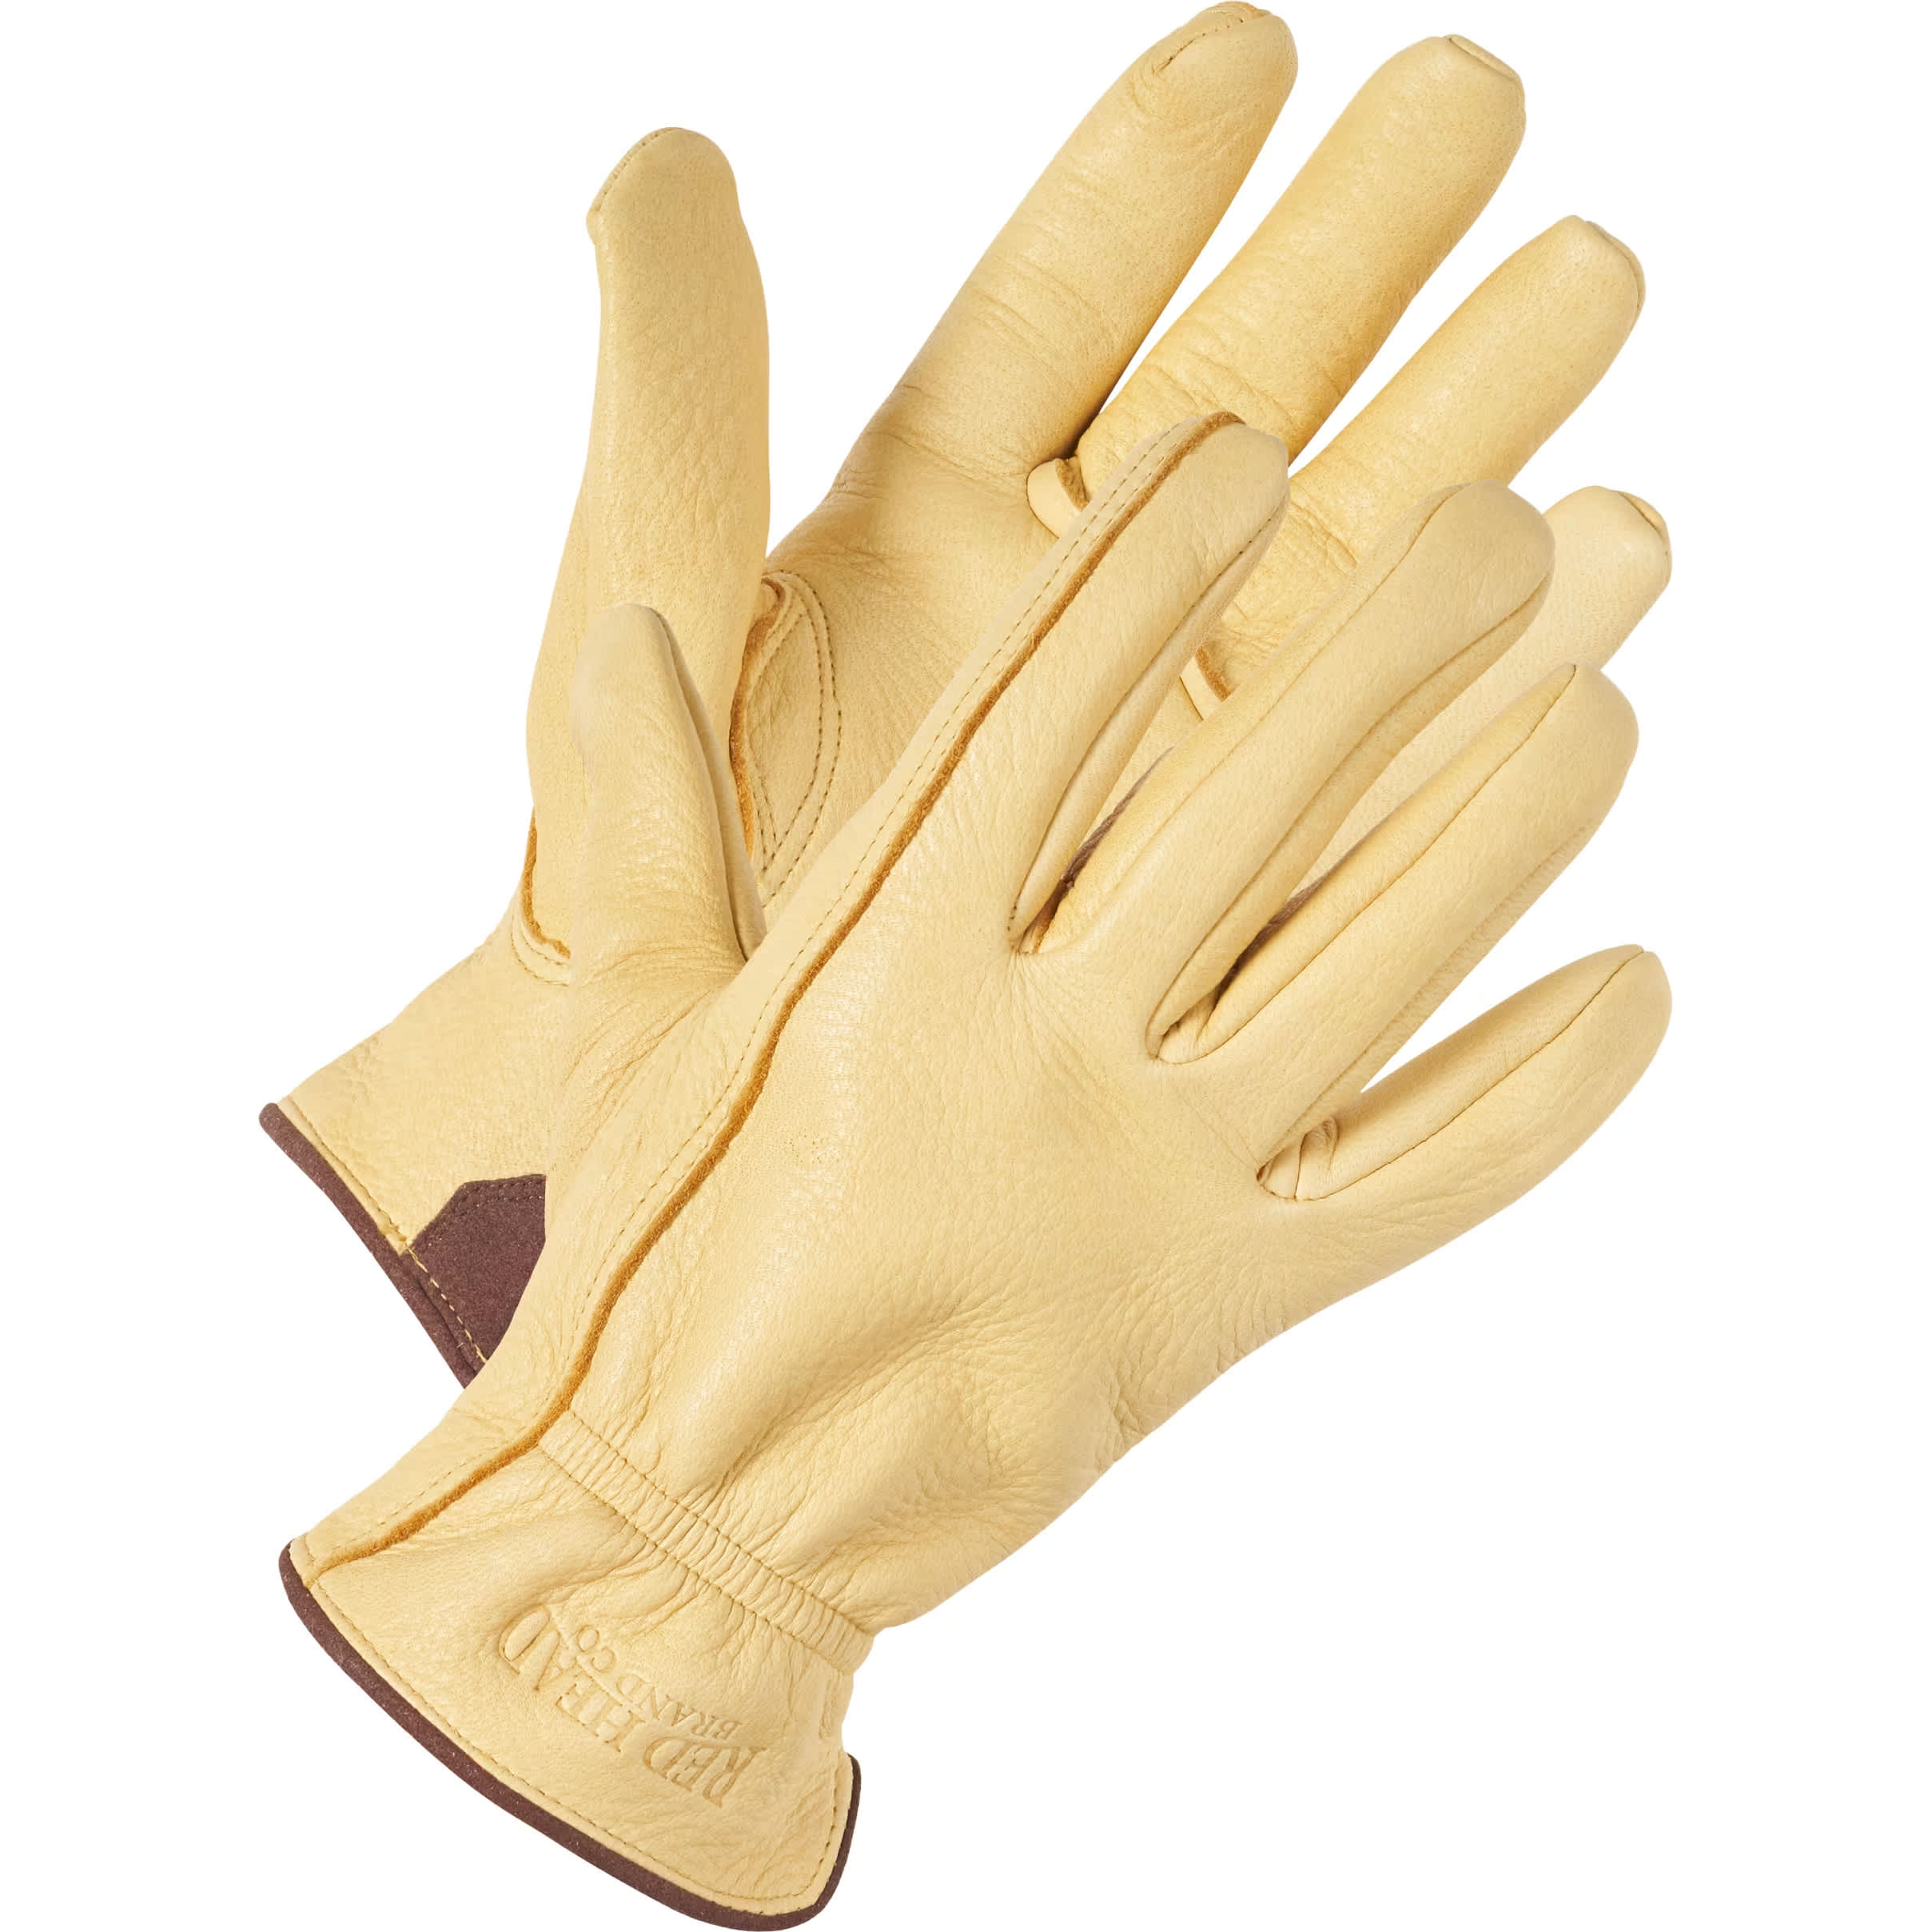 Raber Glove Arctica Sport Gloves